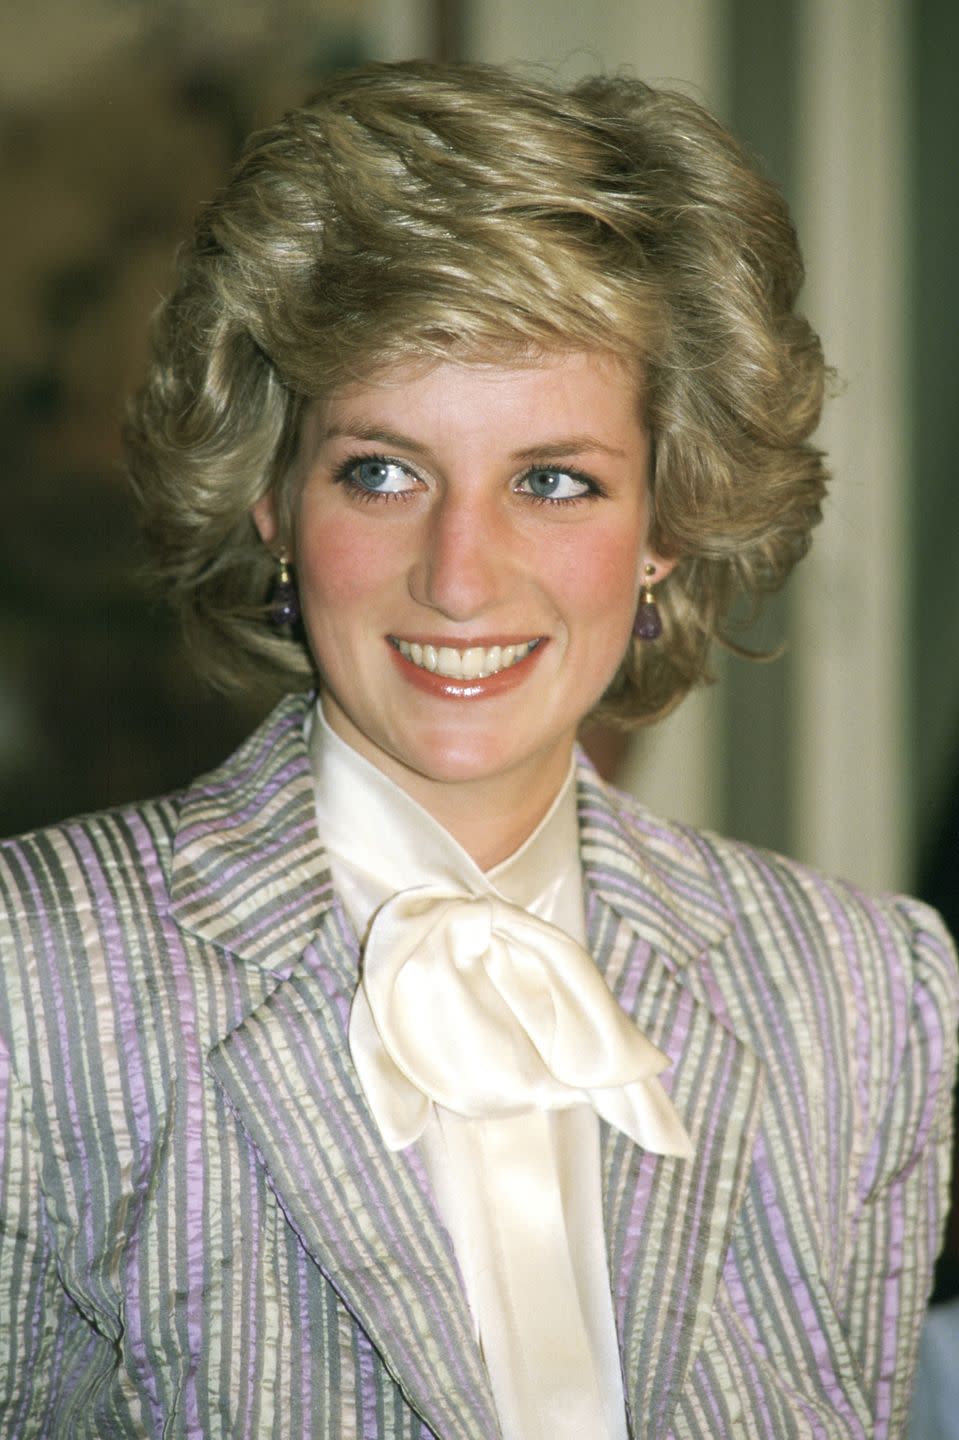 <p><strong>La princesa Diana de Gales (1961-1997)</strong>, más conocida como 'Lady Di', fue la primera <strong>mujer del príncipe Carlos de Gales</strong>, con quien tuvo <strong>dos hijos, Guillermo y Enrique. </strong></p><p><strong>La princesa murió en un accidente de tráfico el 31 de agosto de 1997, cinco años después de separarse de su marido.</strong></p>